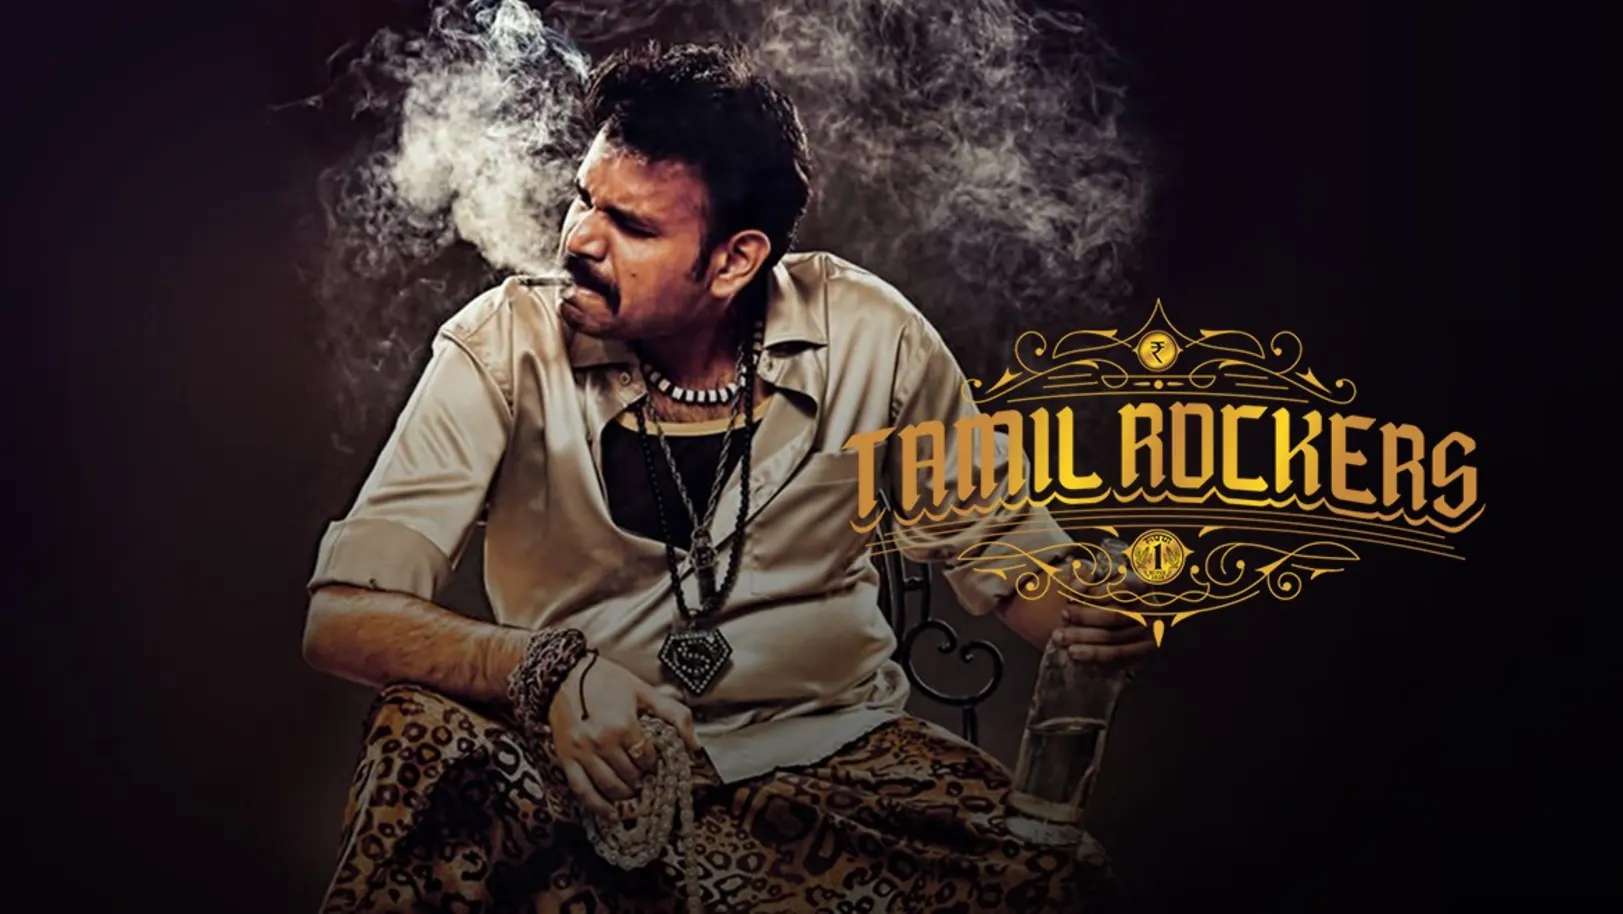 Tamil Rockers Movie